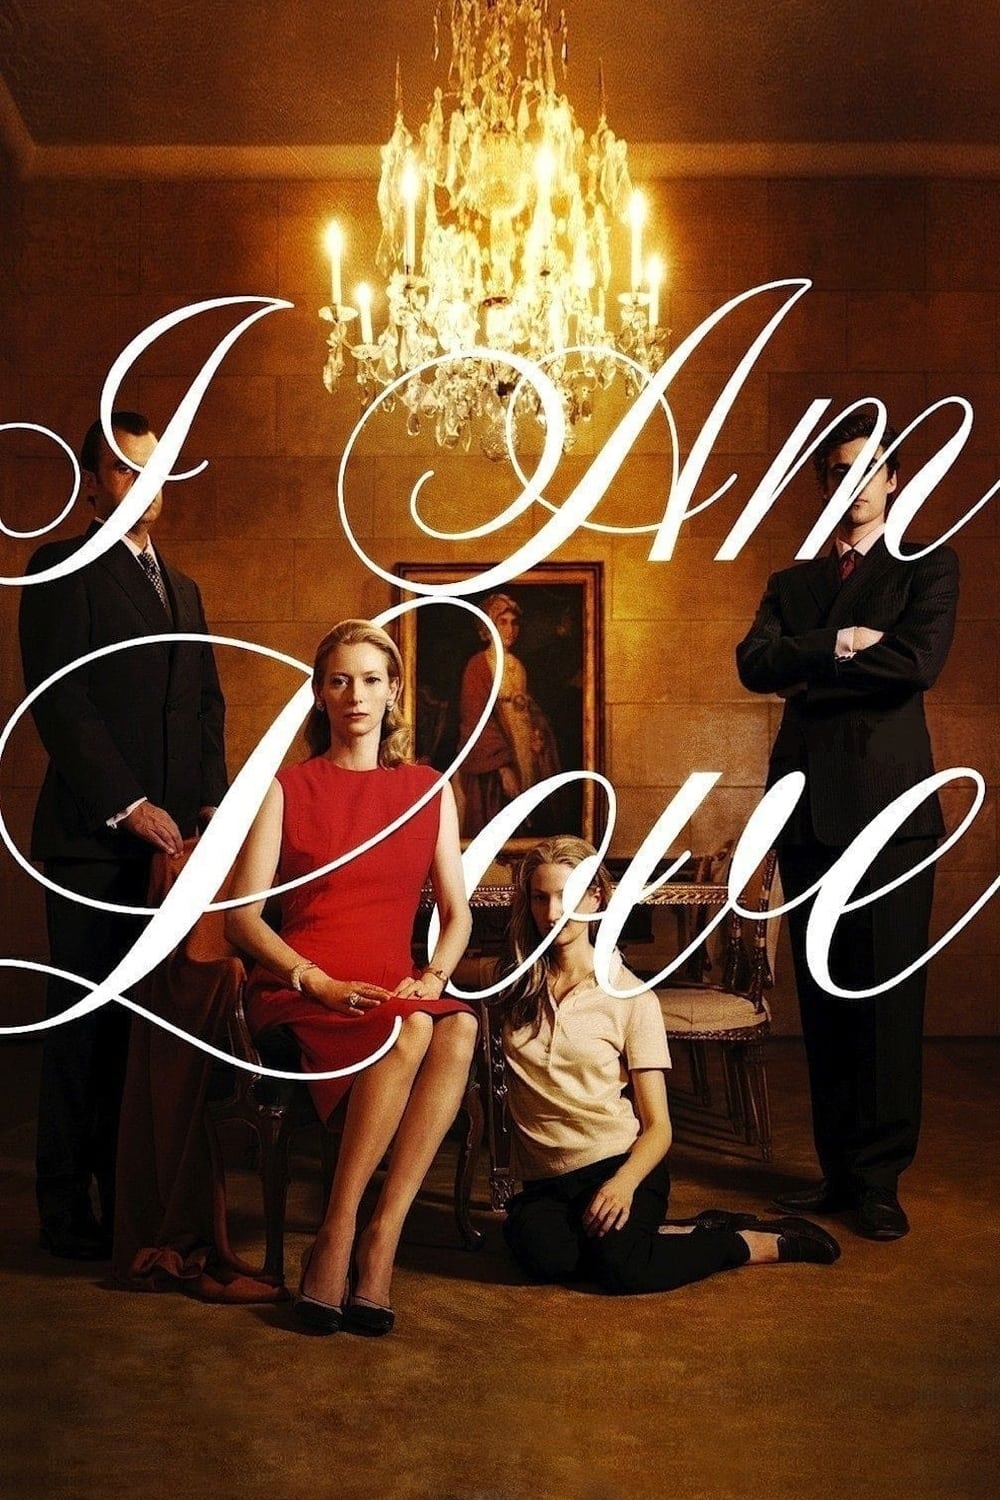 I Am Love (2009)